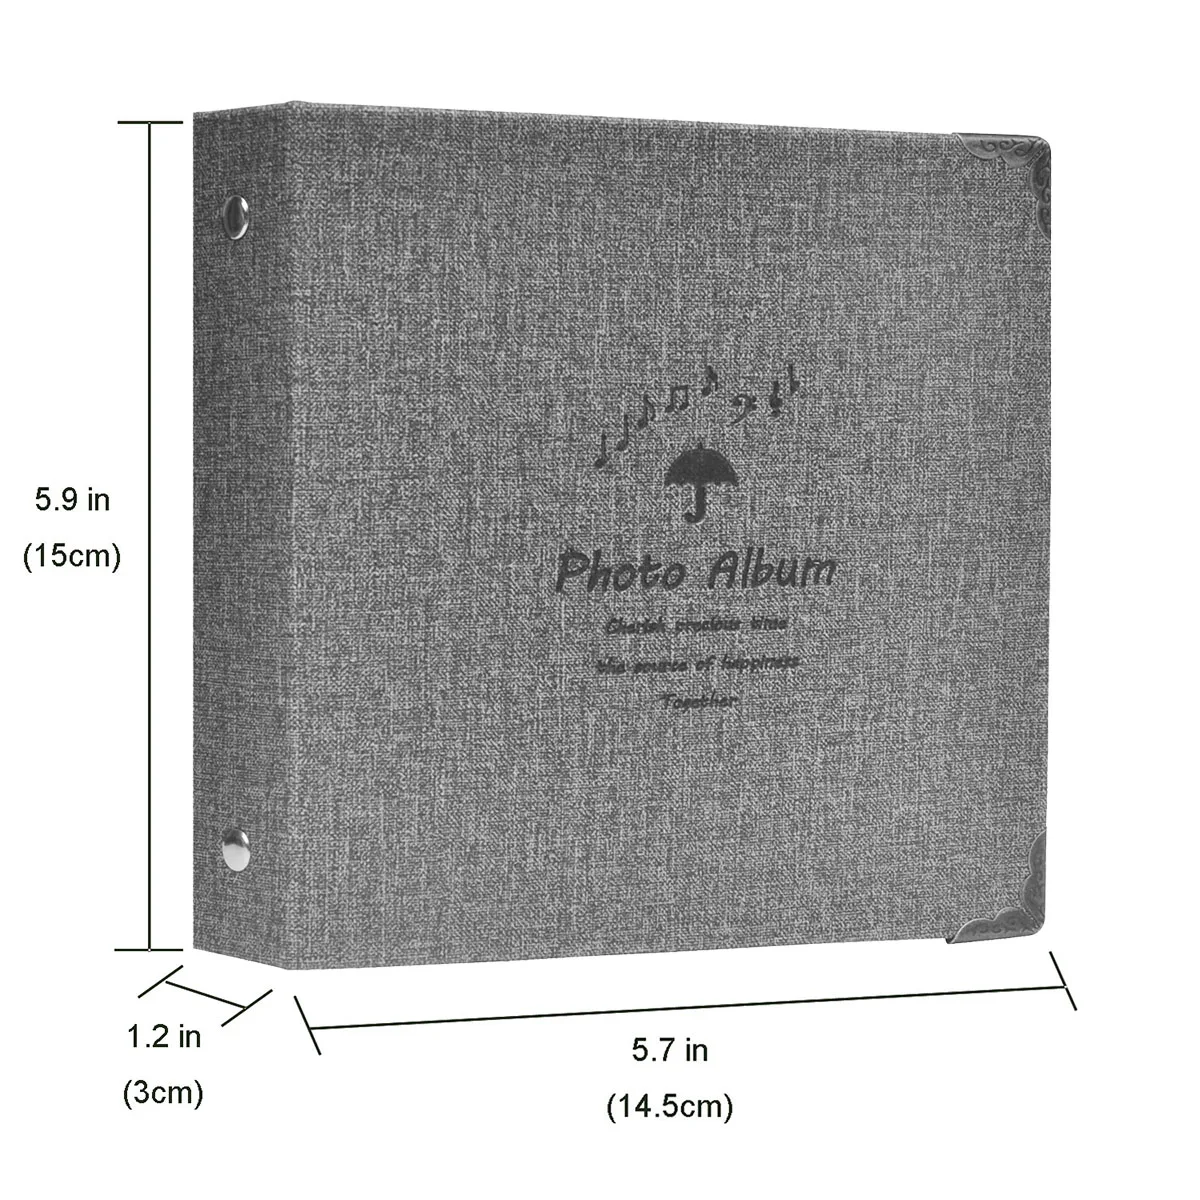 100 карманов Instax Mini альбом 3 дюймов пленка фото бумага книга из искусственной кожи чехол для Fujifilm Instax Mini 9 8 7s 90 70 25 камера подарок